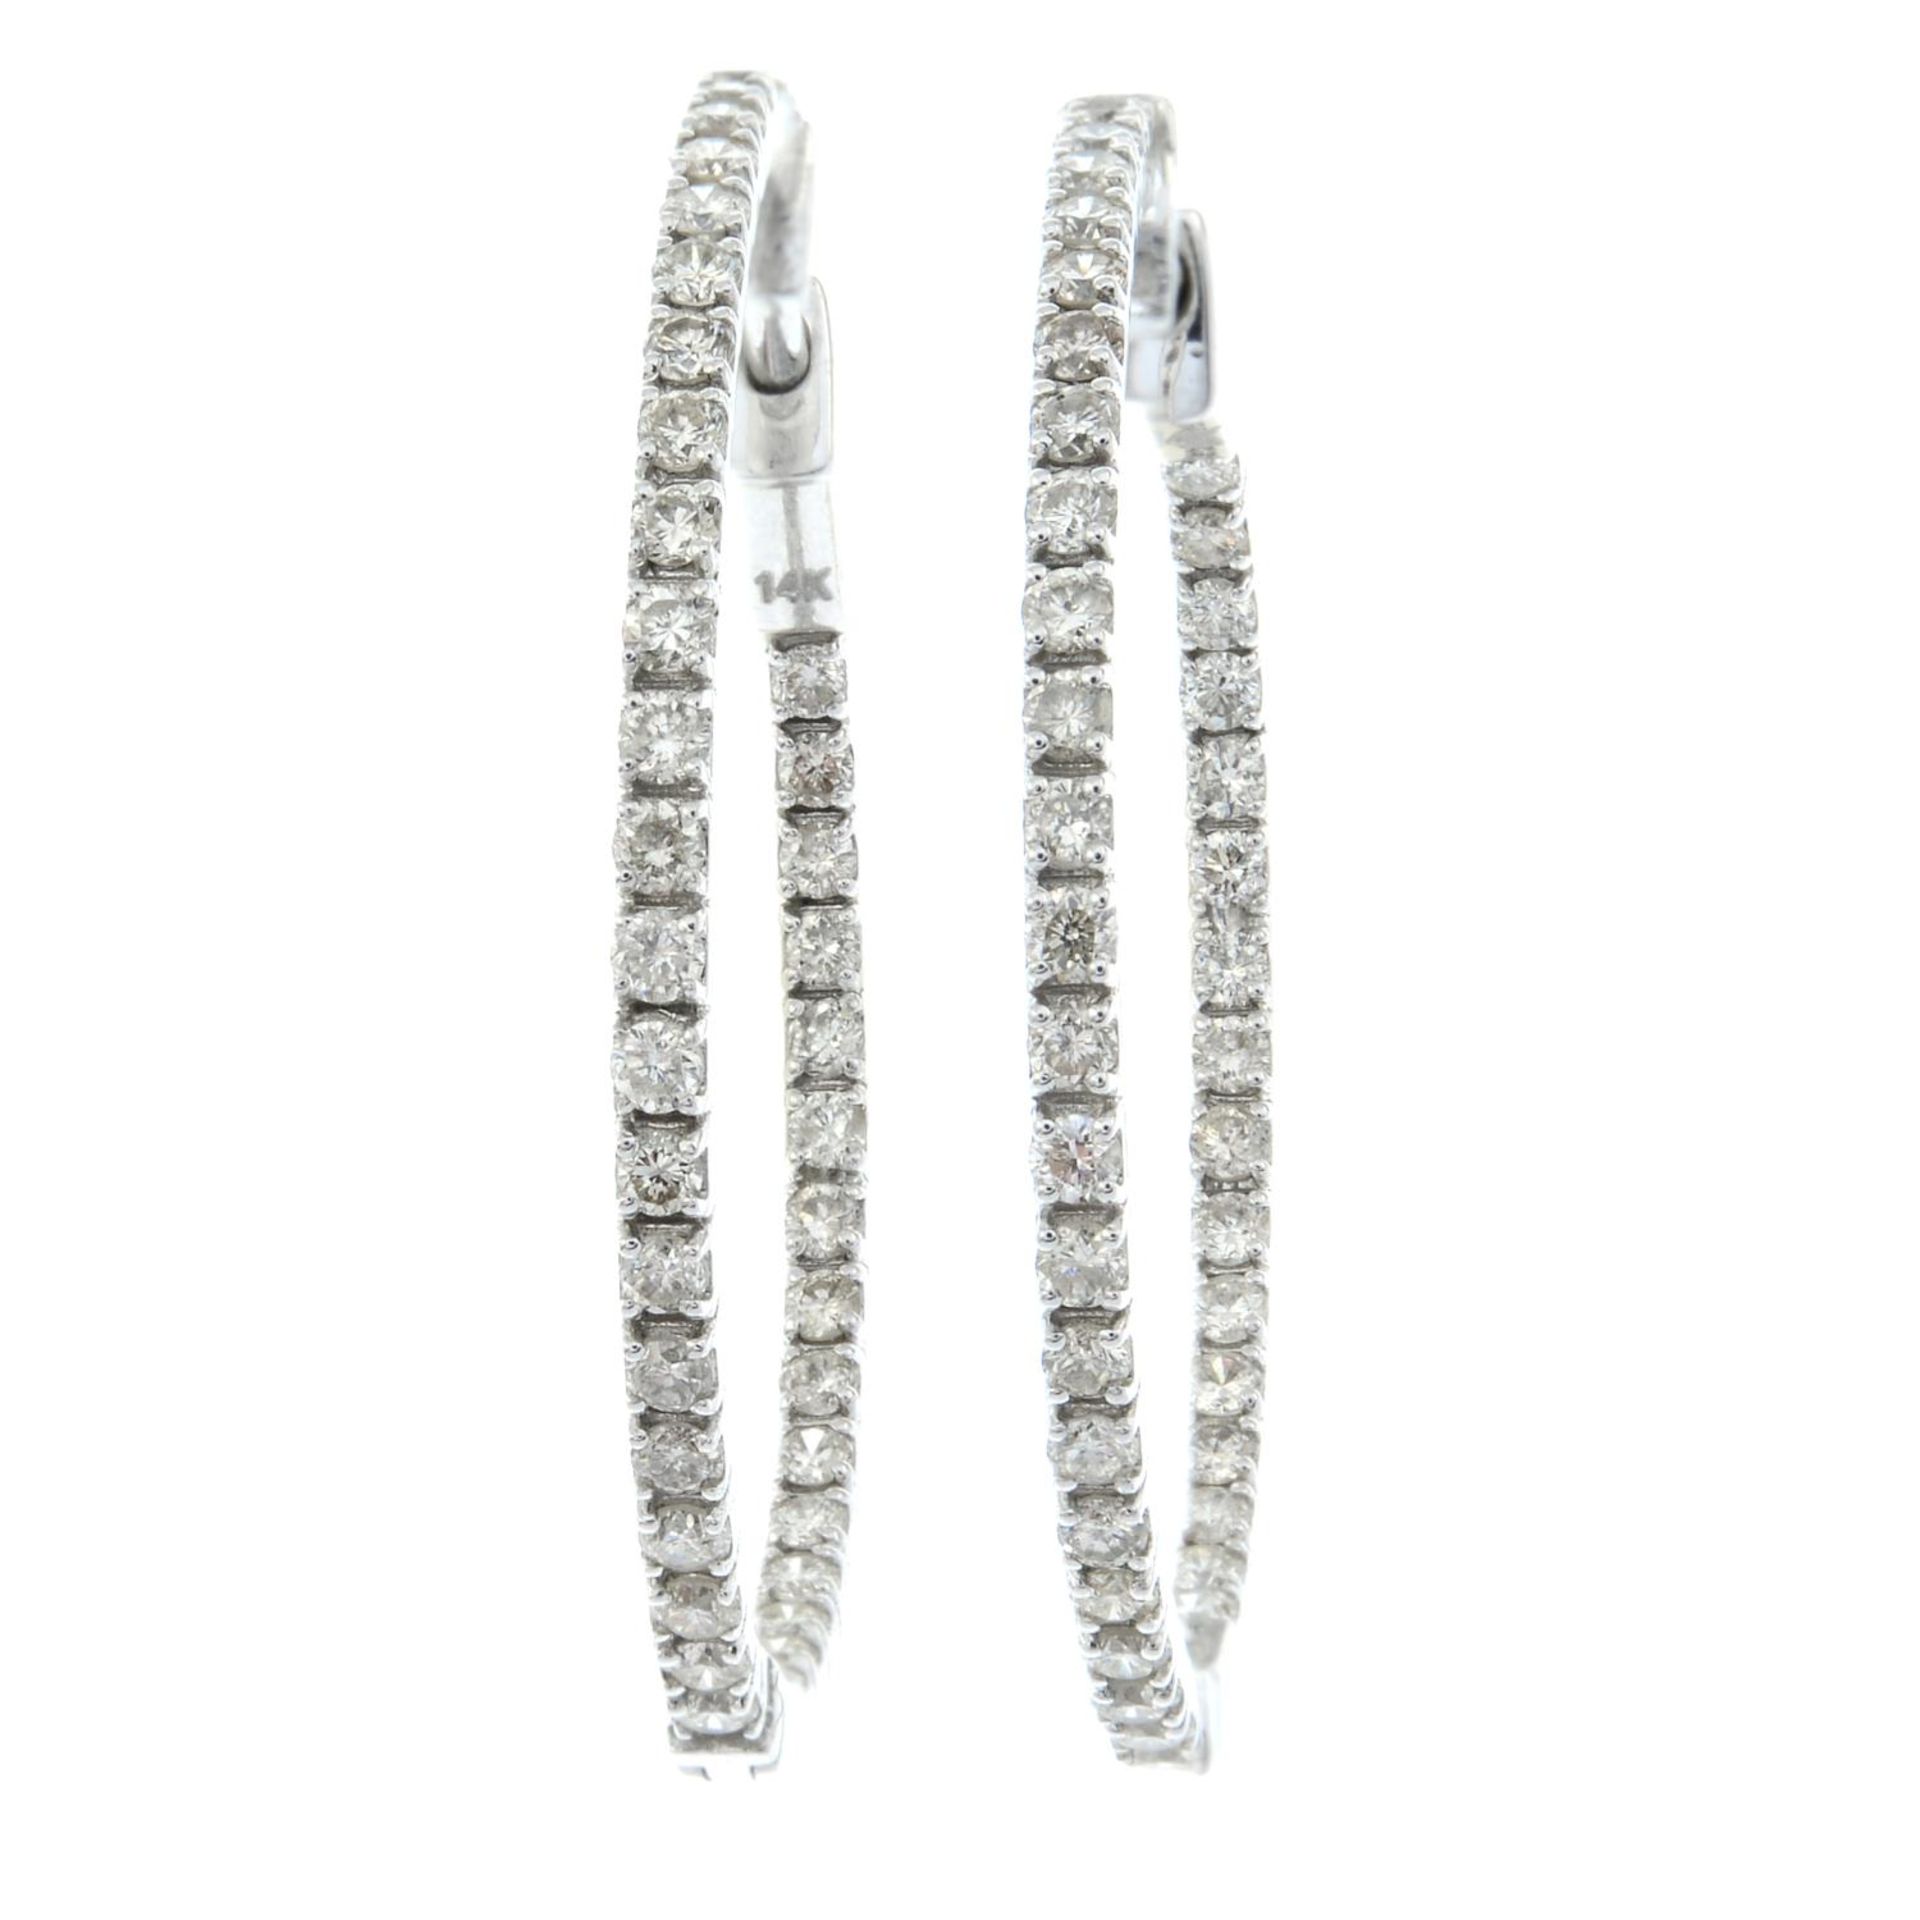 A pair of diamond hoop earrings.Estimated total diamond weight 0.45ct.